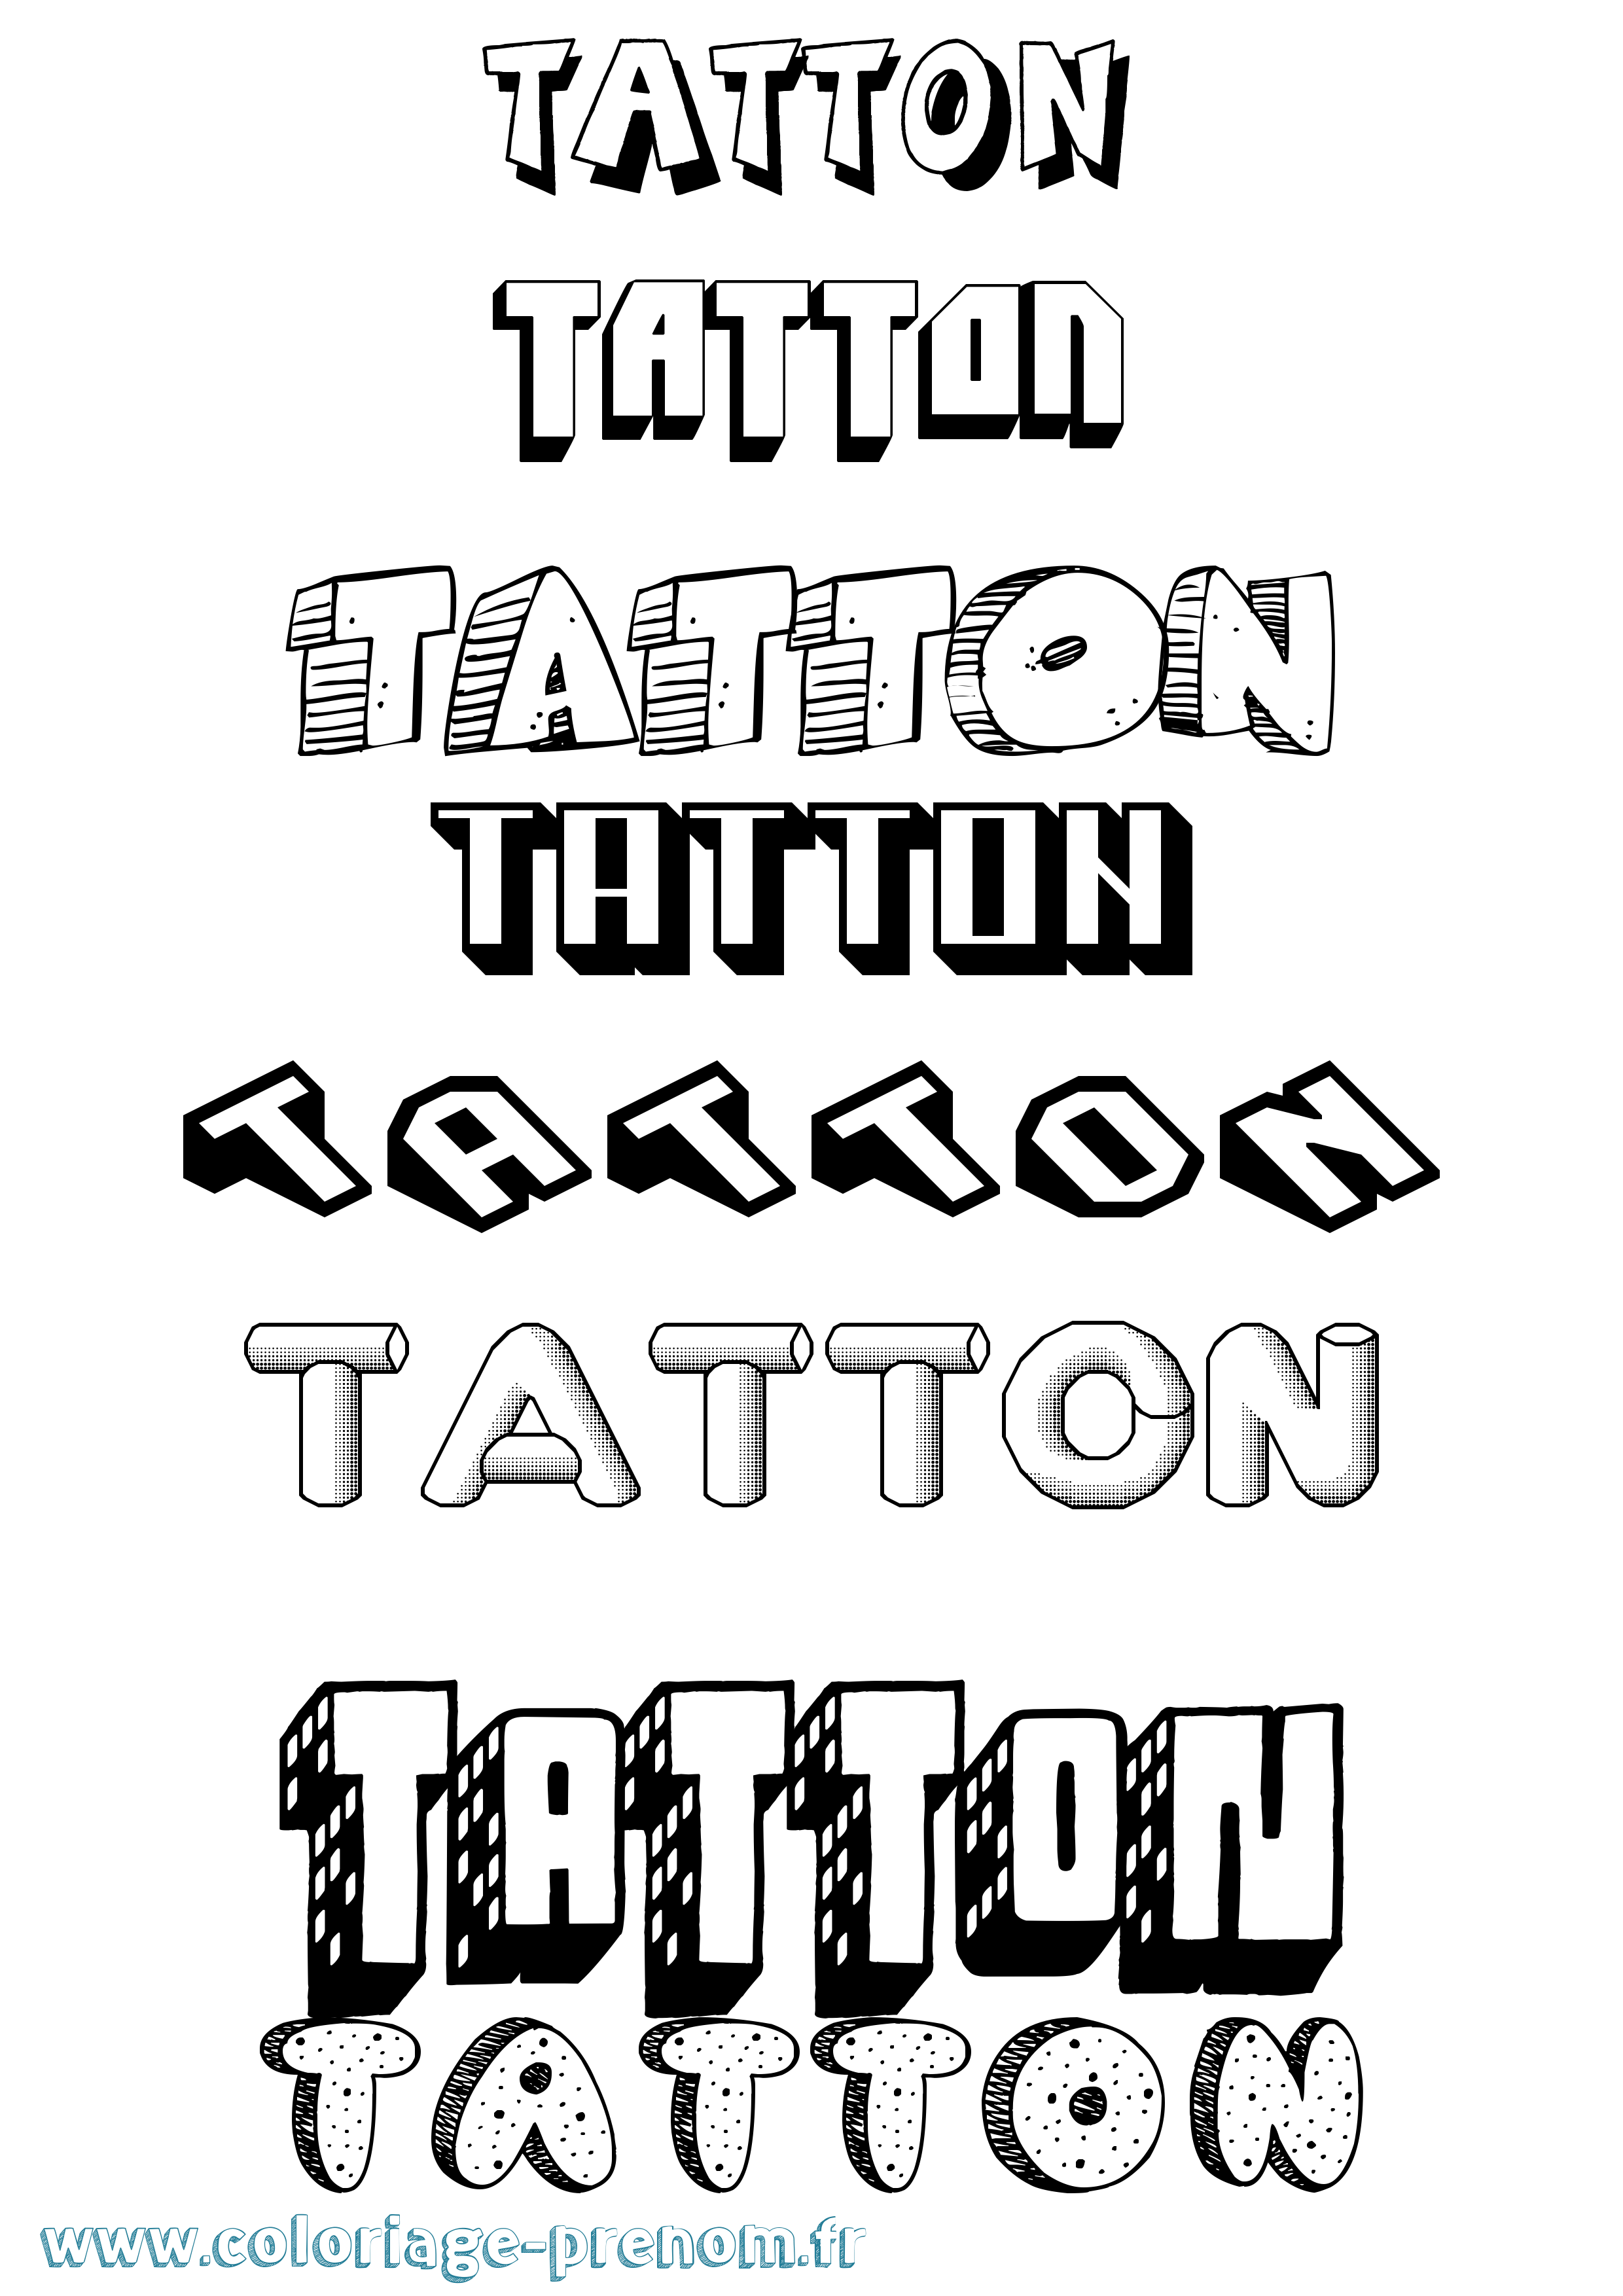 Coloriage prénom Tatton Effet 3D